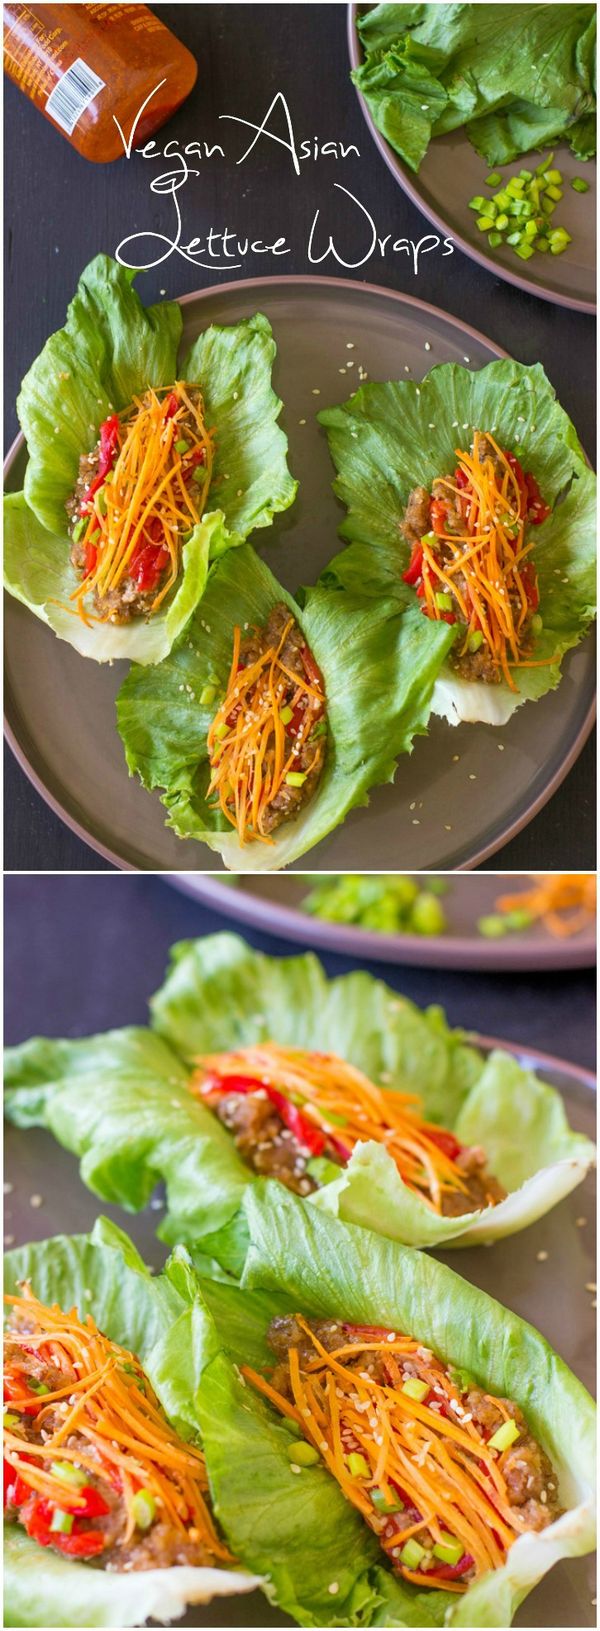 Vegan Asian Lettuce Wraps